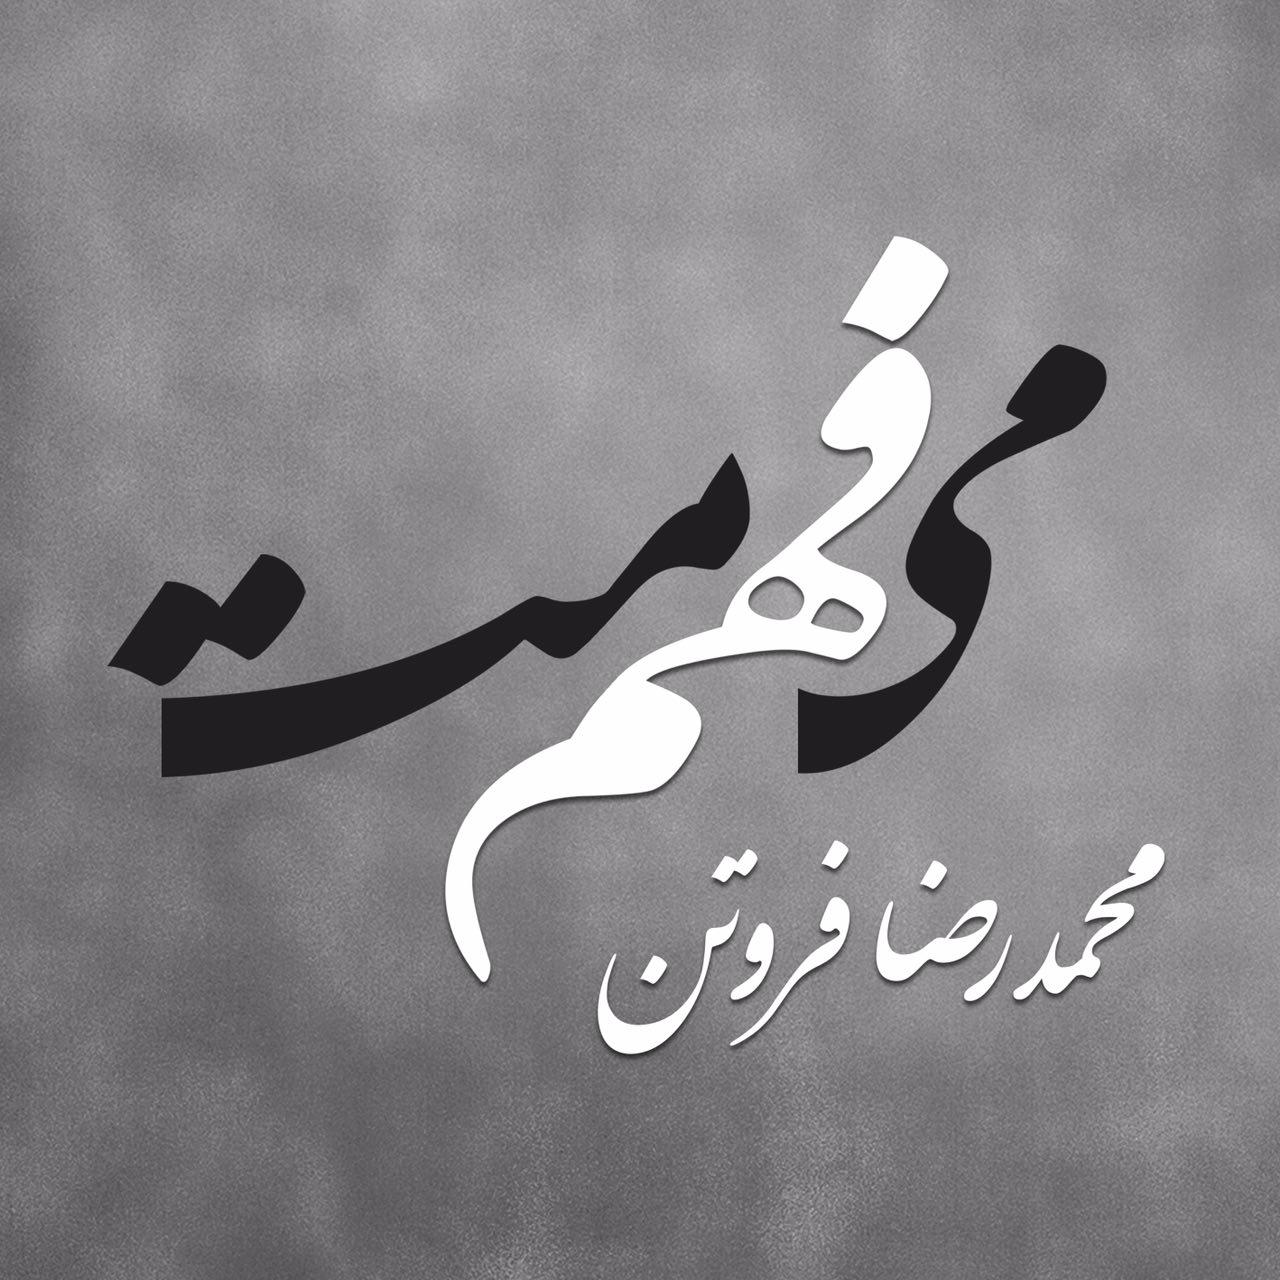 رونمایی از نام اولین آلبوم محمدرضا فروتن